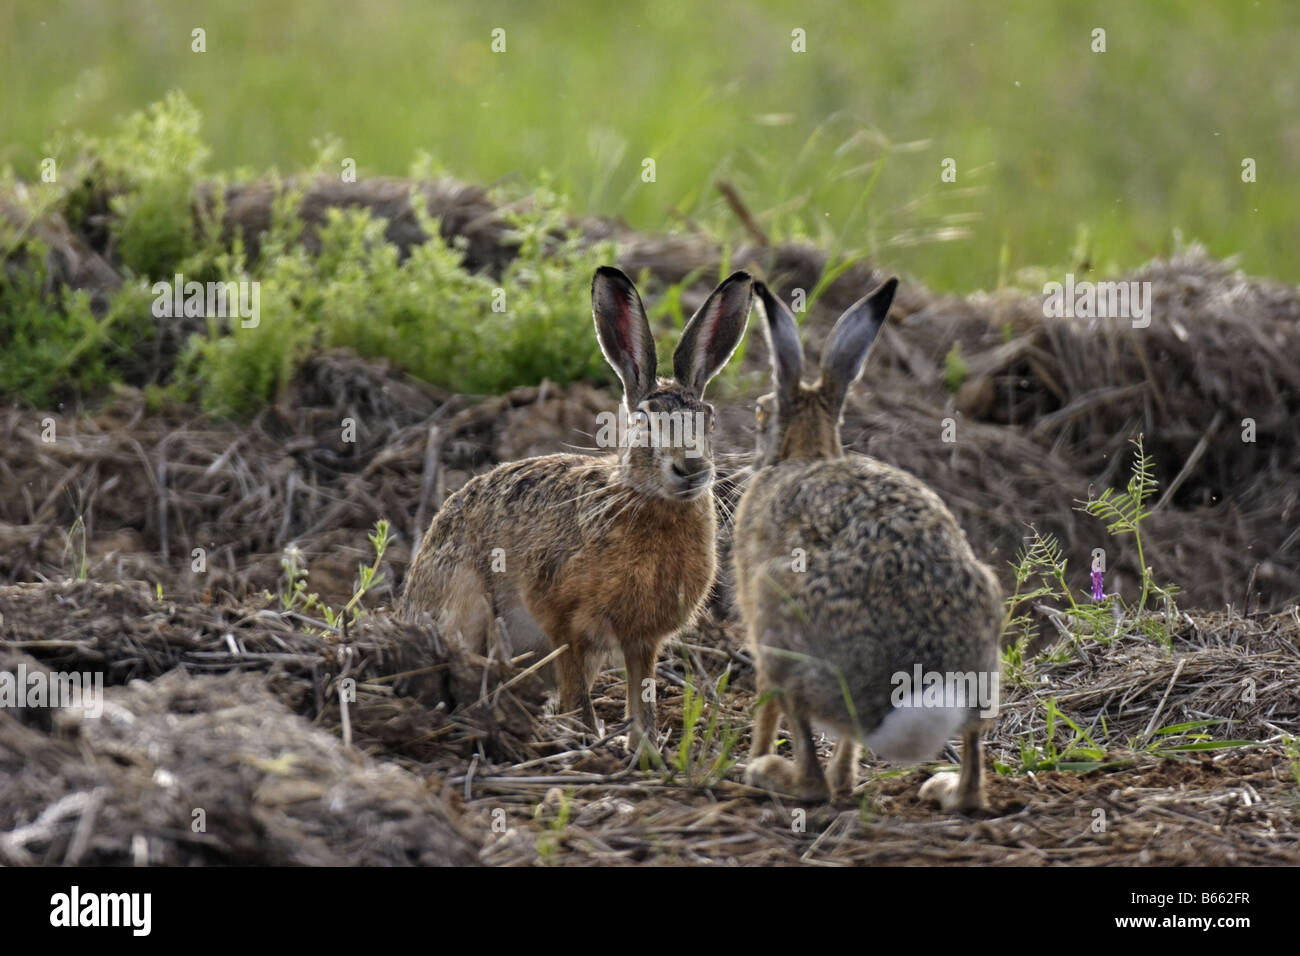 Hase Feldhase lepus europaeus hare rabbit Stock Photo